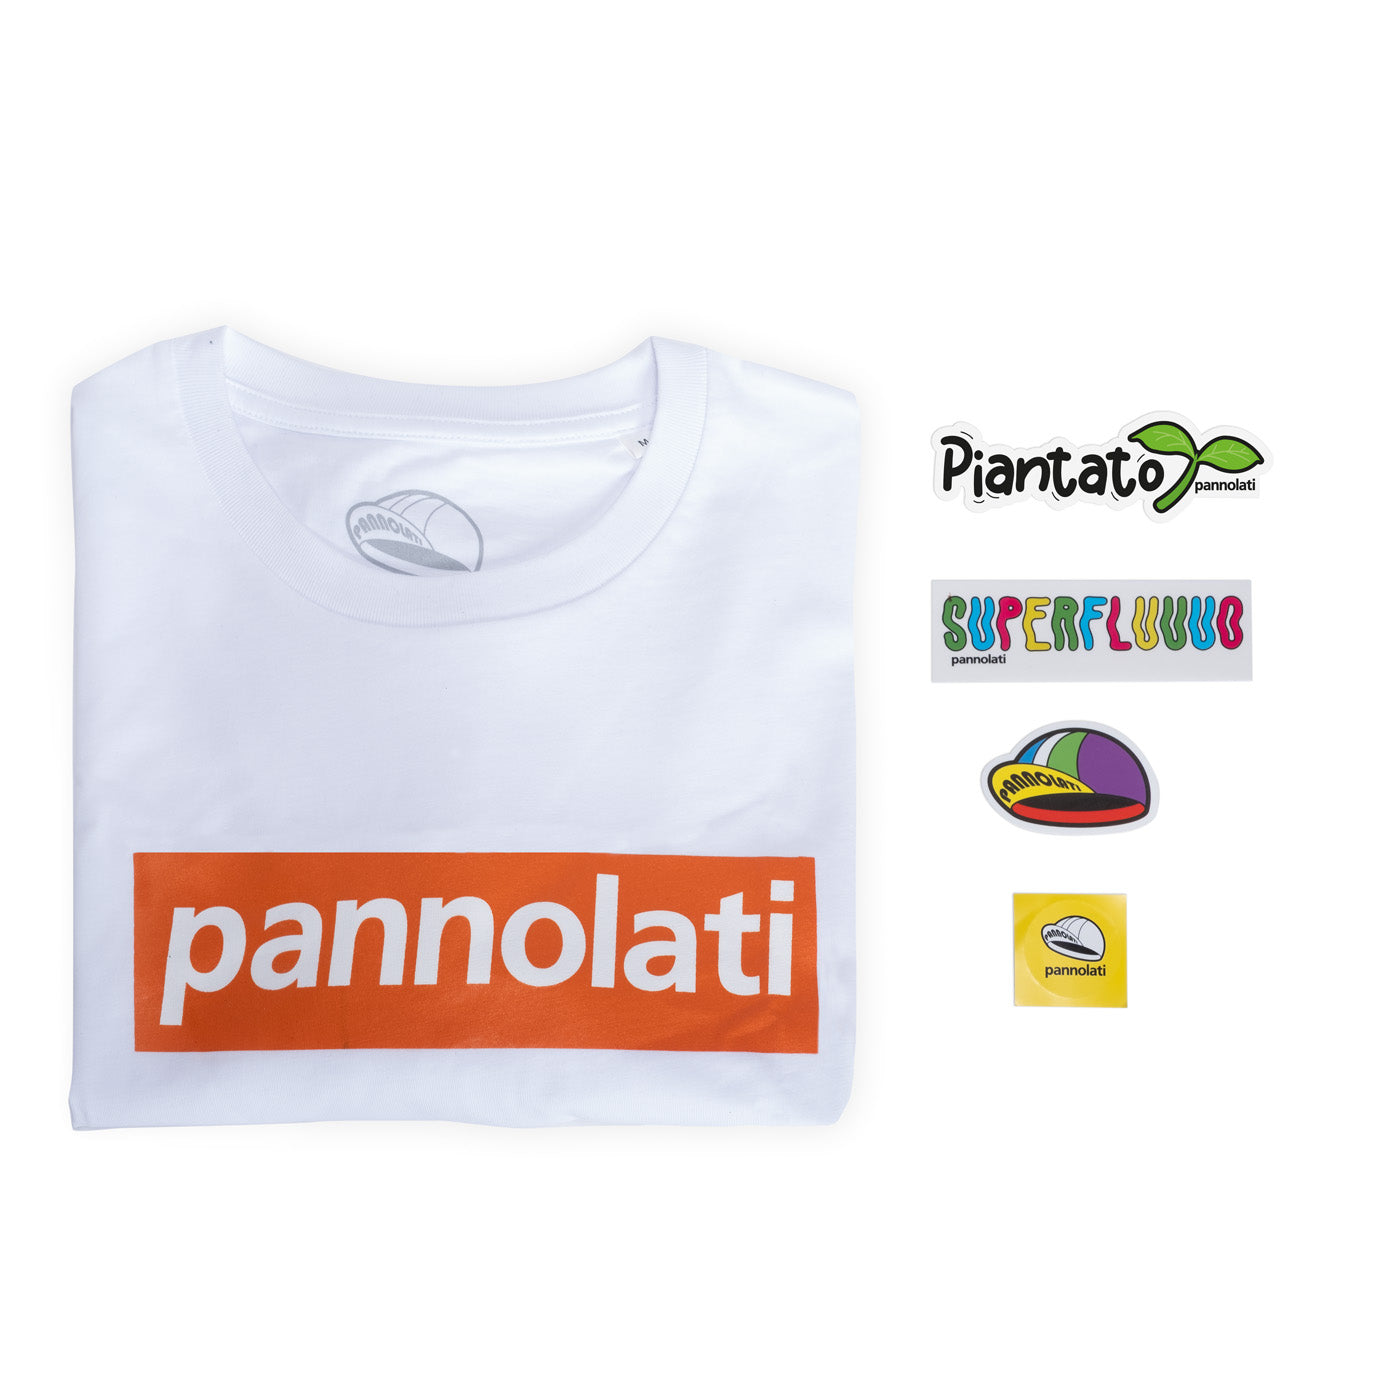 T-shirt Pannolati Logo